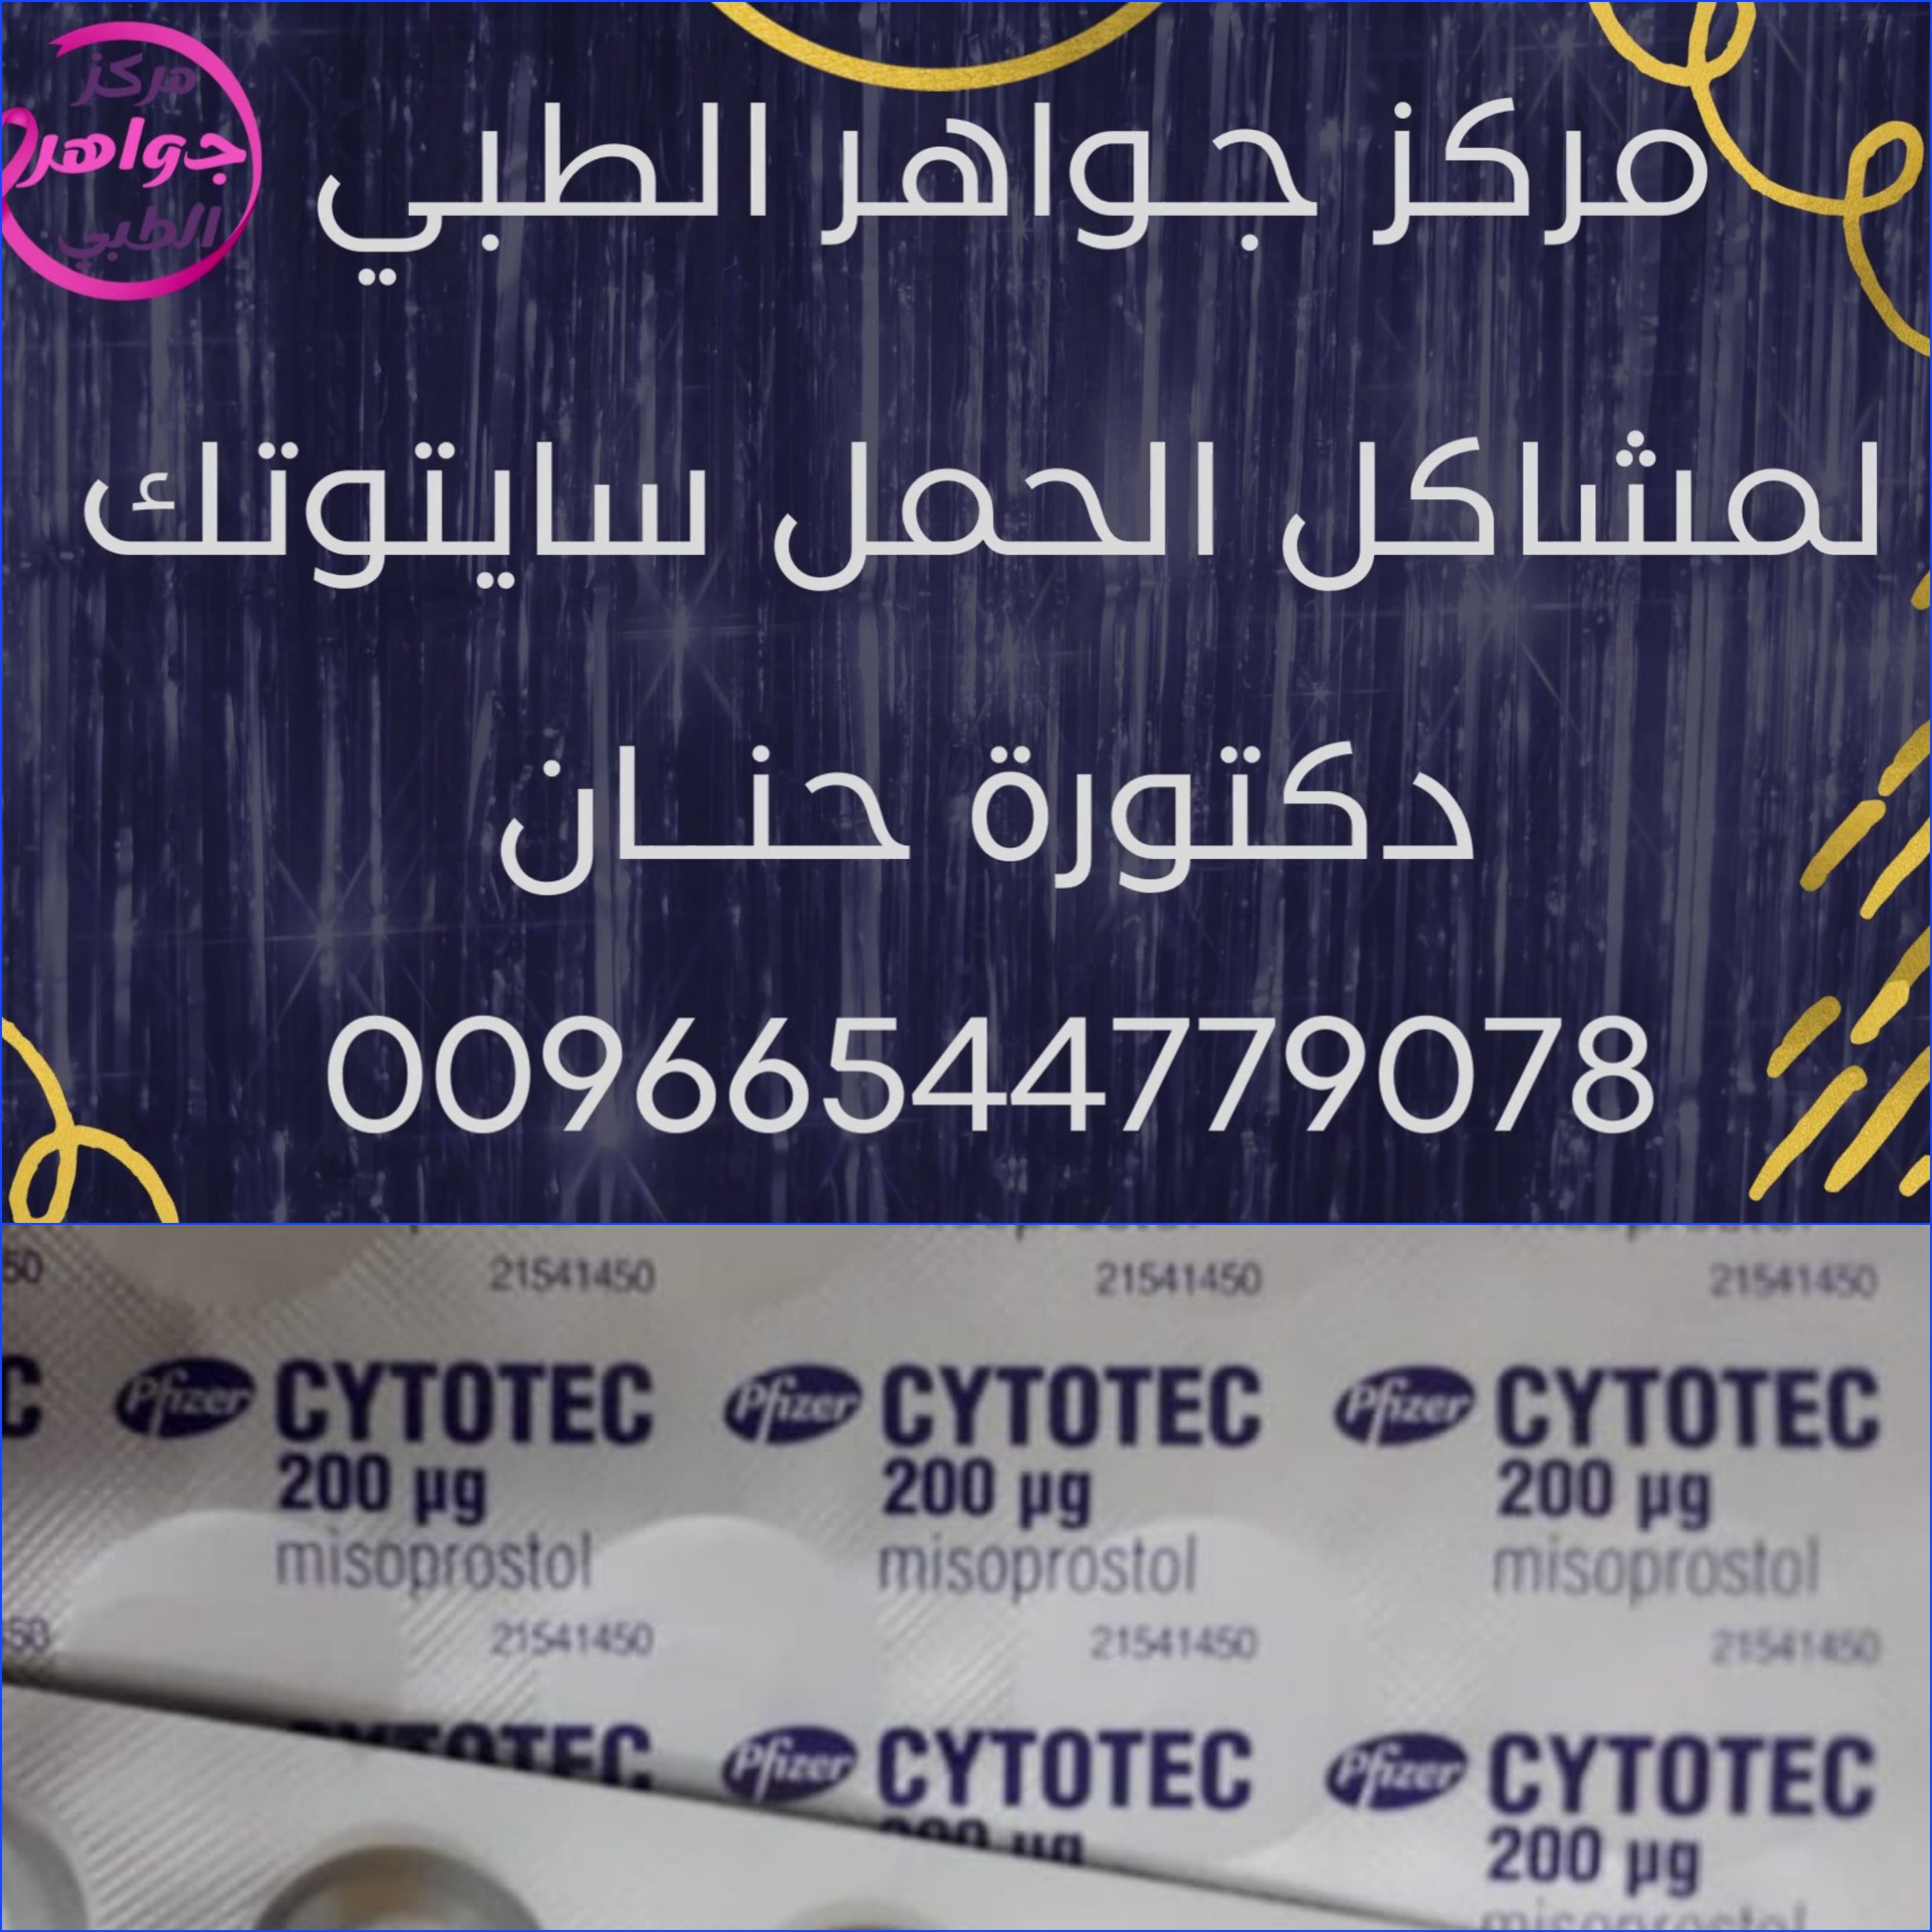 ملابسحبوب سايتوتك في السعوديه - Cytotec pills in Saudi Arabia -...